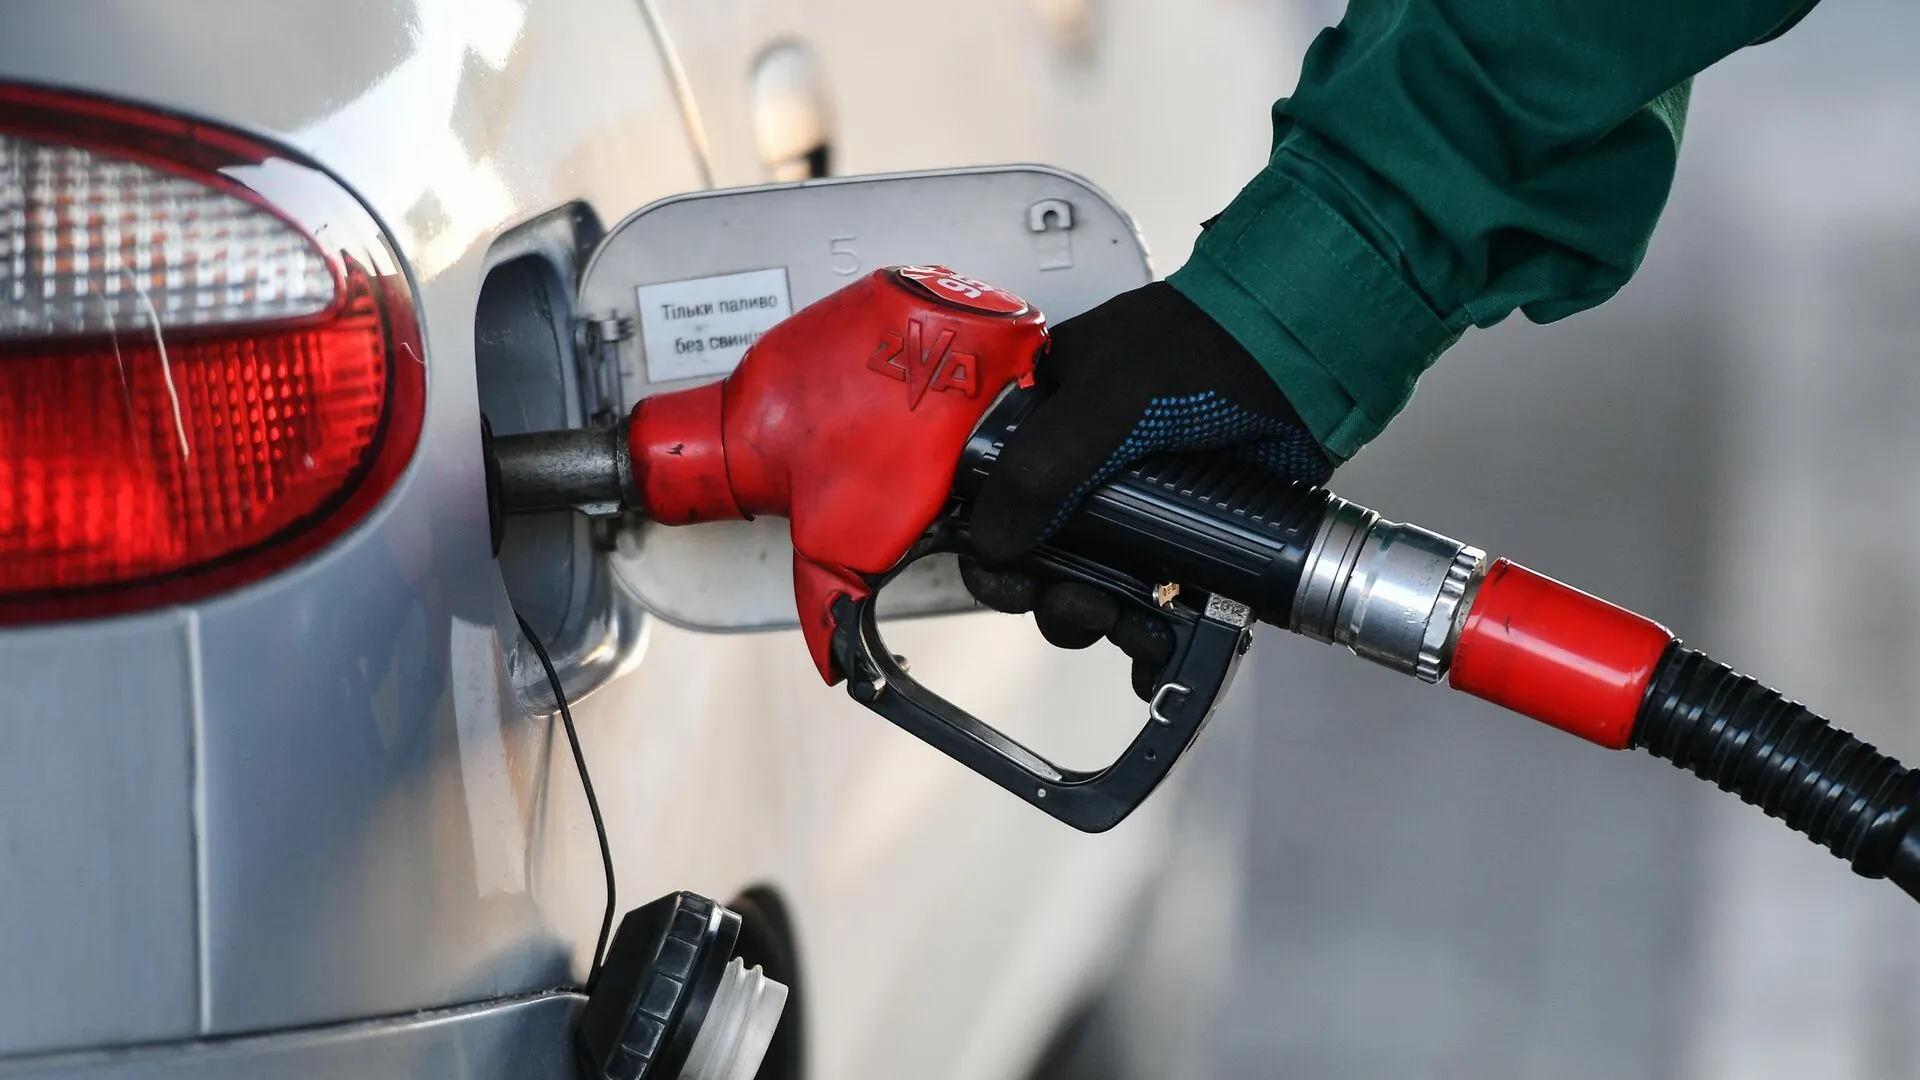 
											
											Rossiya benzin eksportini taqiqlaydi
											
											